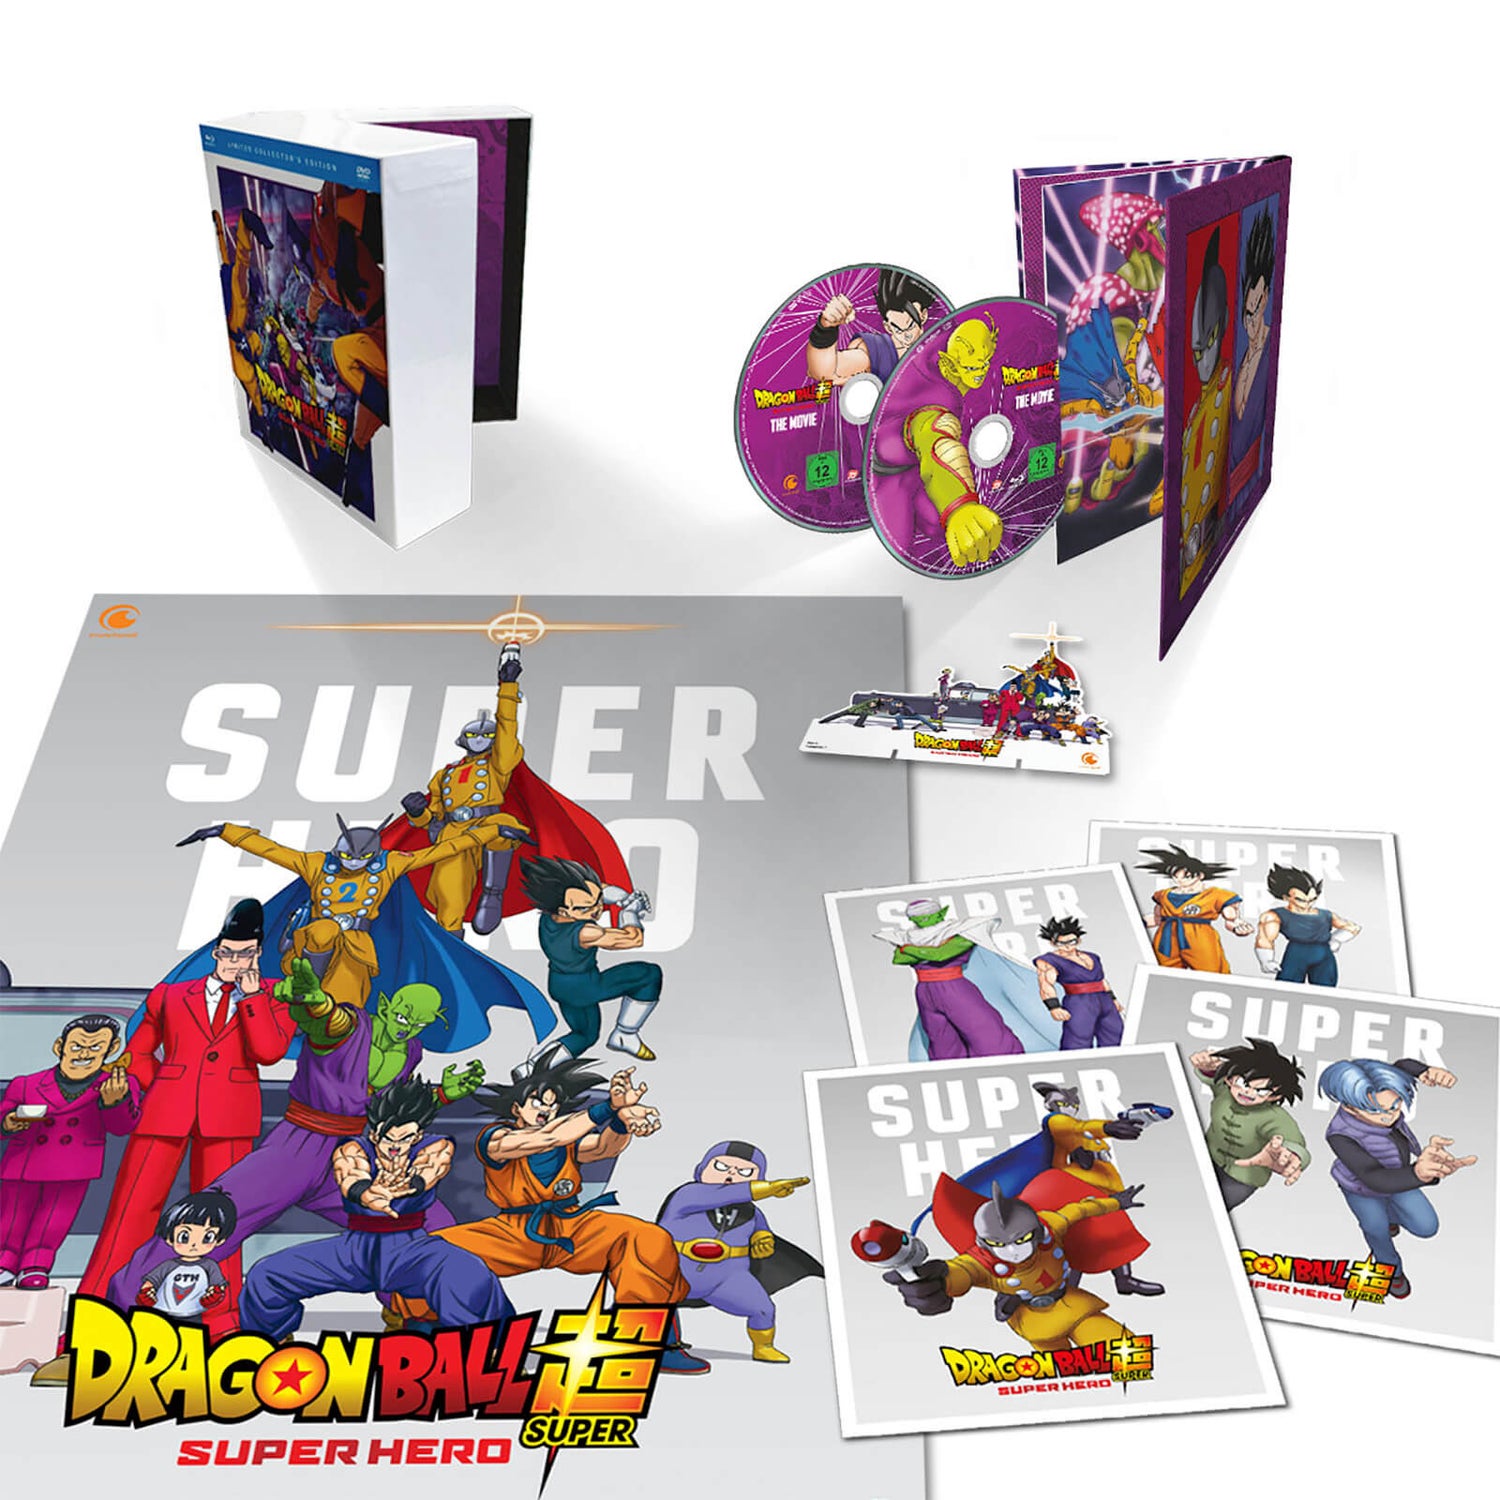 Dragon Ball Super: Super Hero - Collector’s Edition